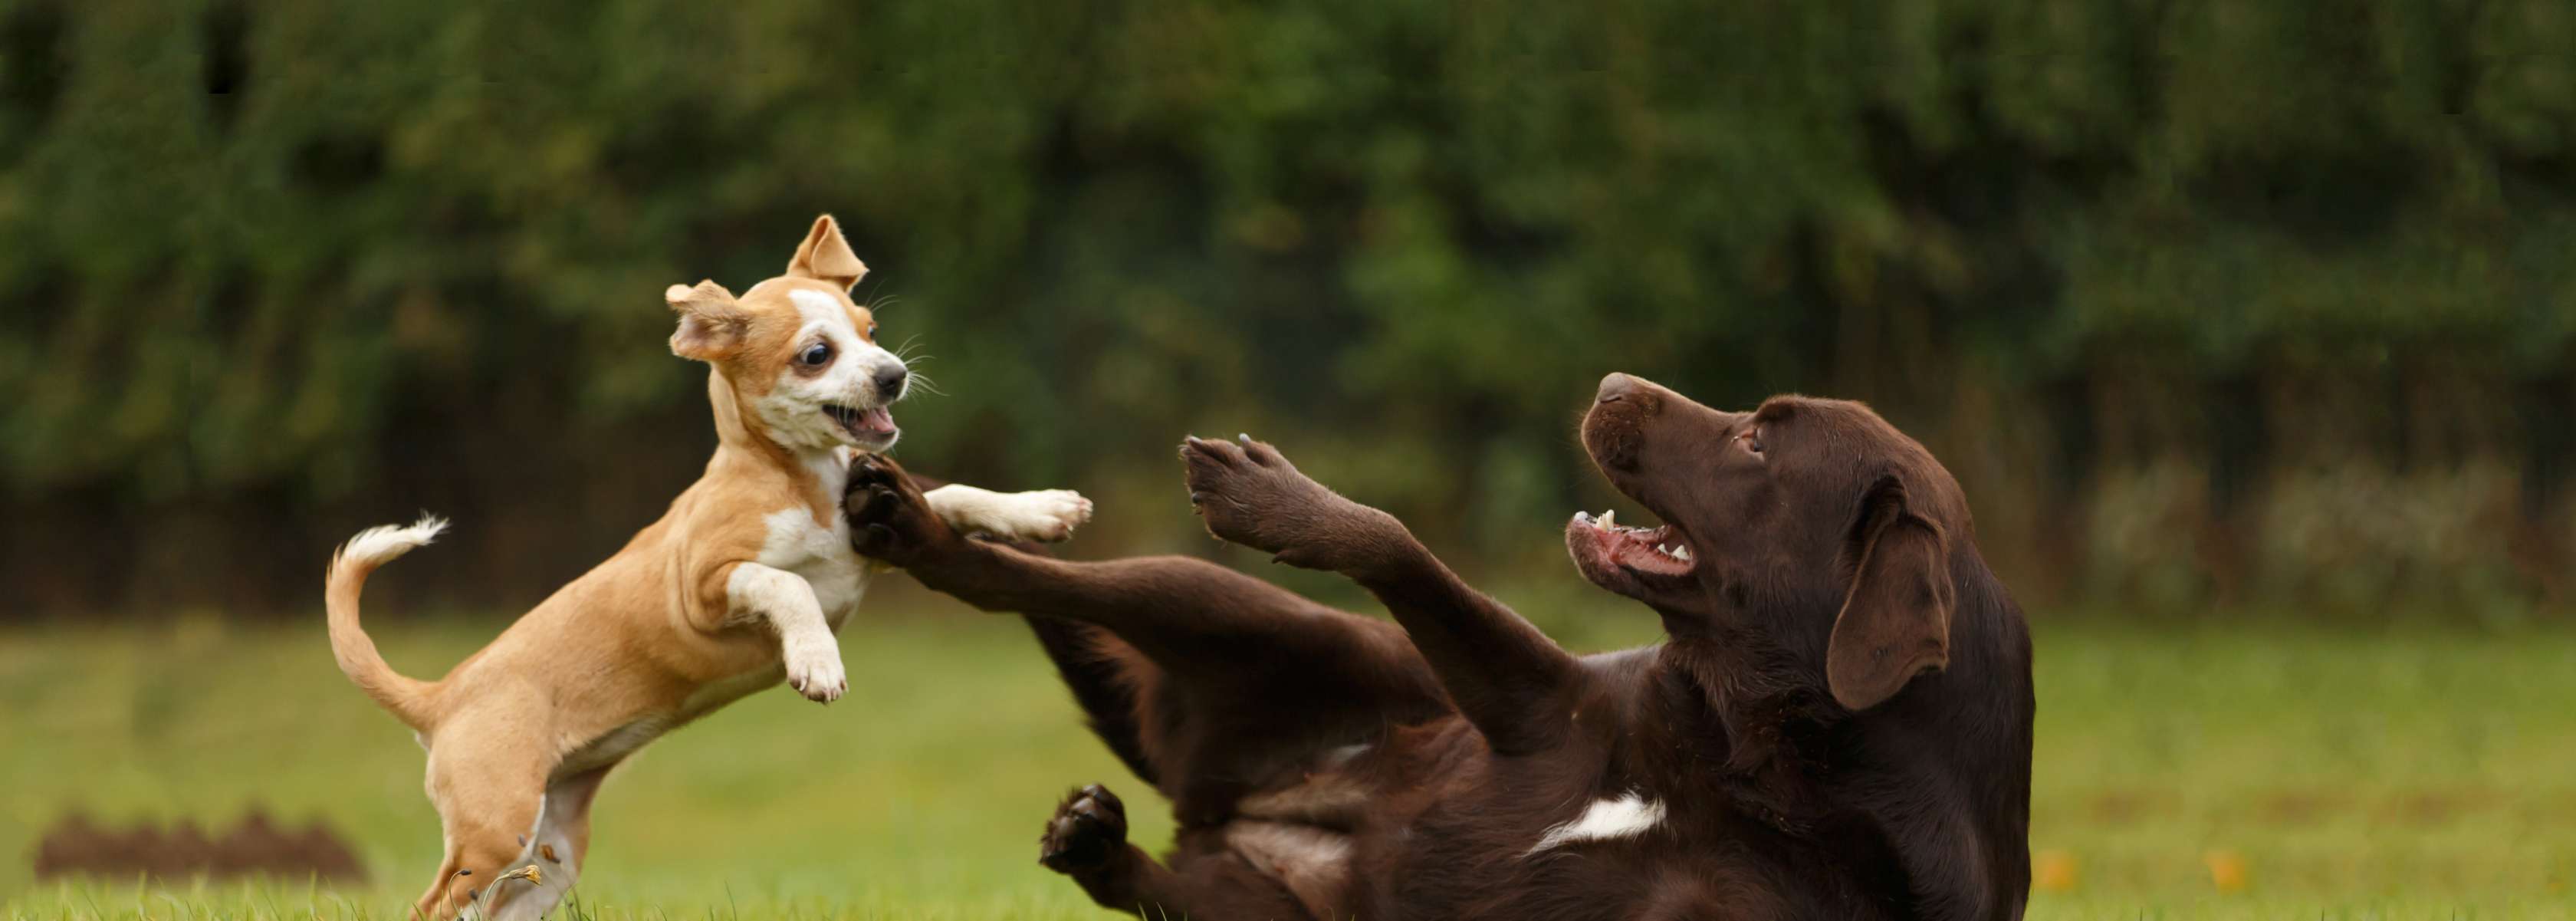 Welpe versucht einen am Boden liegenden braunen Labrador zu beißen. Bei einem Hundebiss kann Schmerzensgeld vom Besitzer verlangt werden.